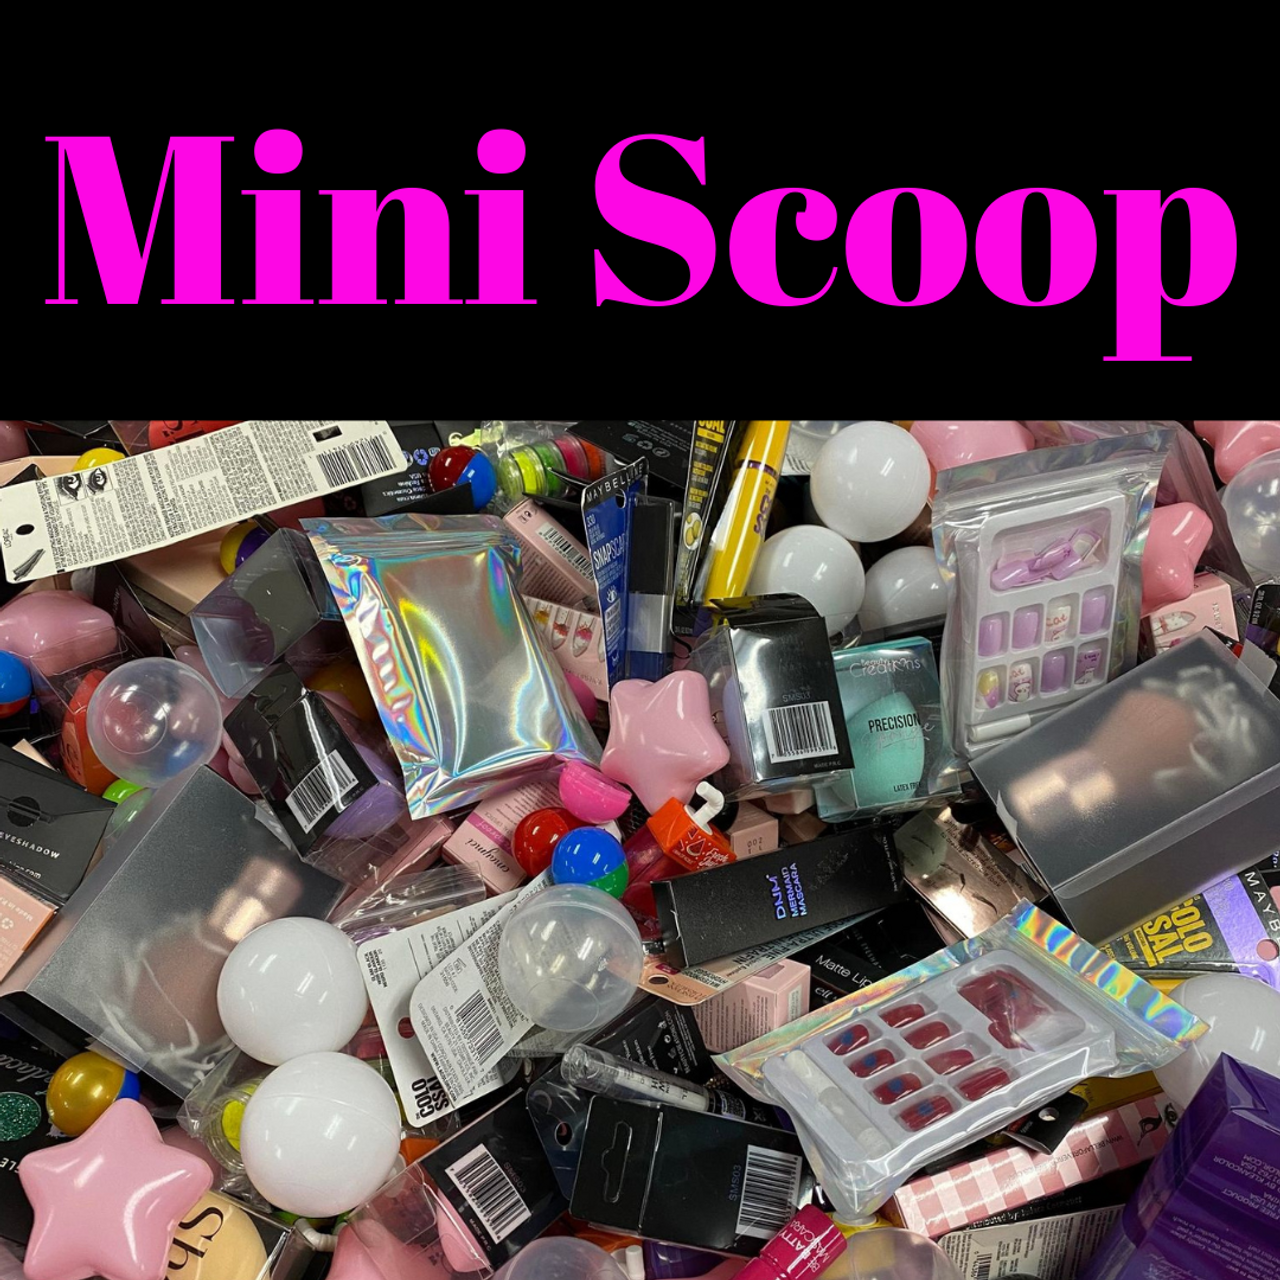 Mini Scoop